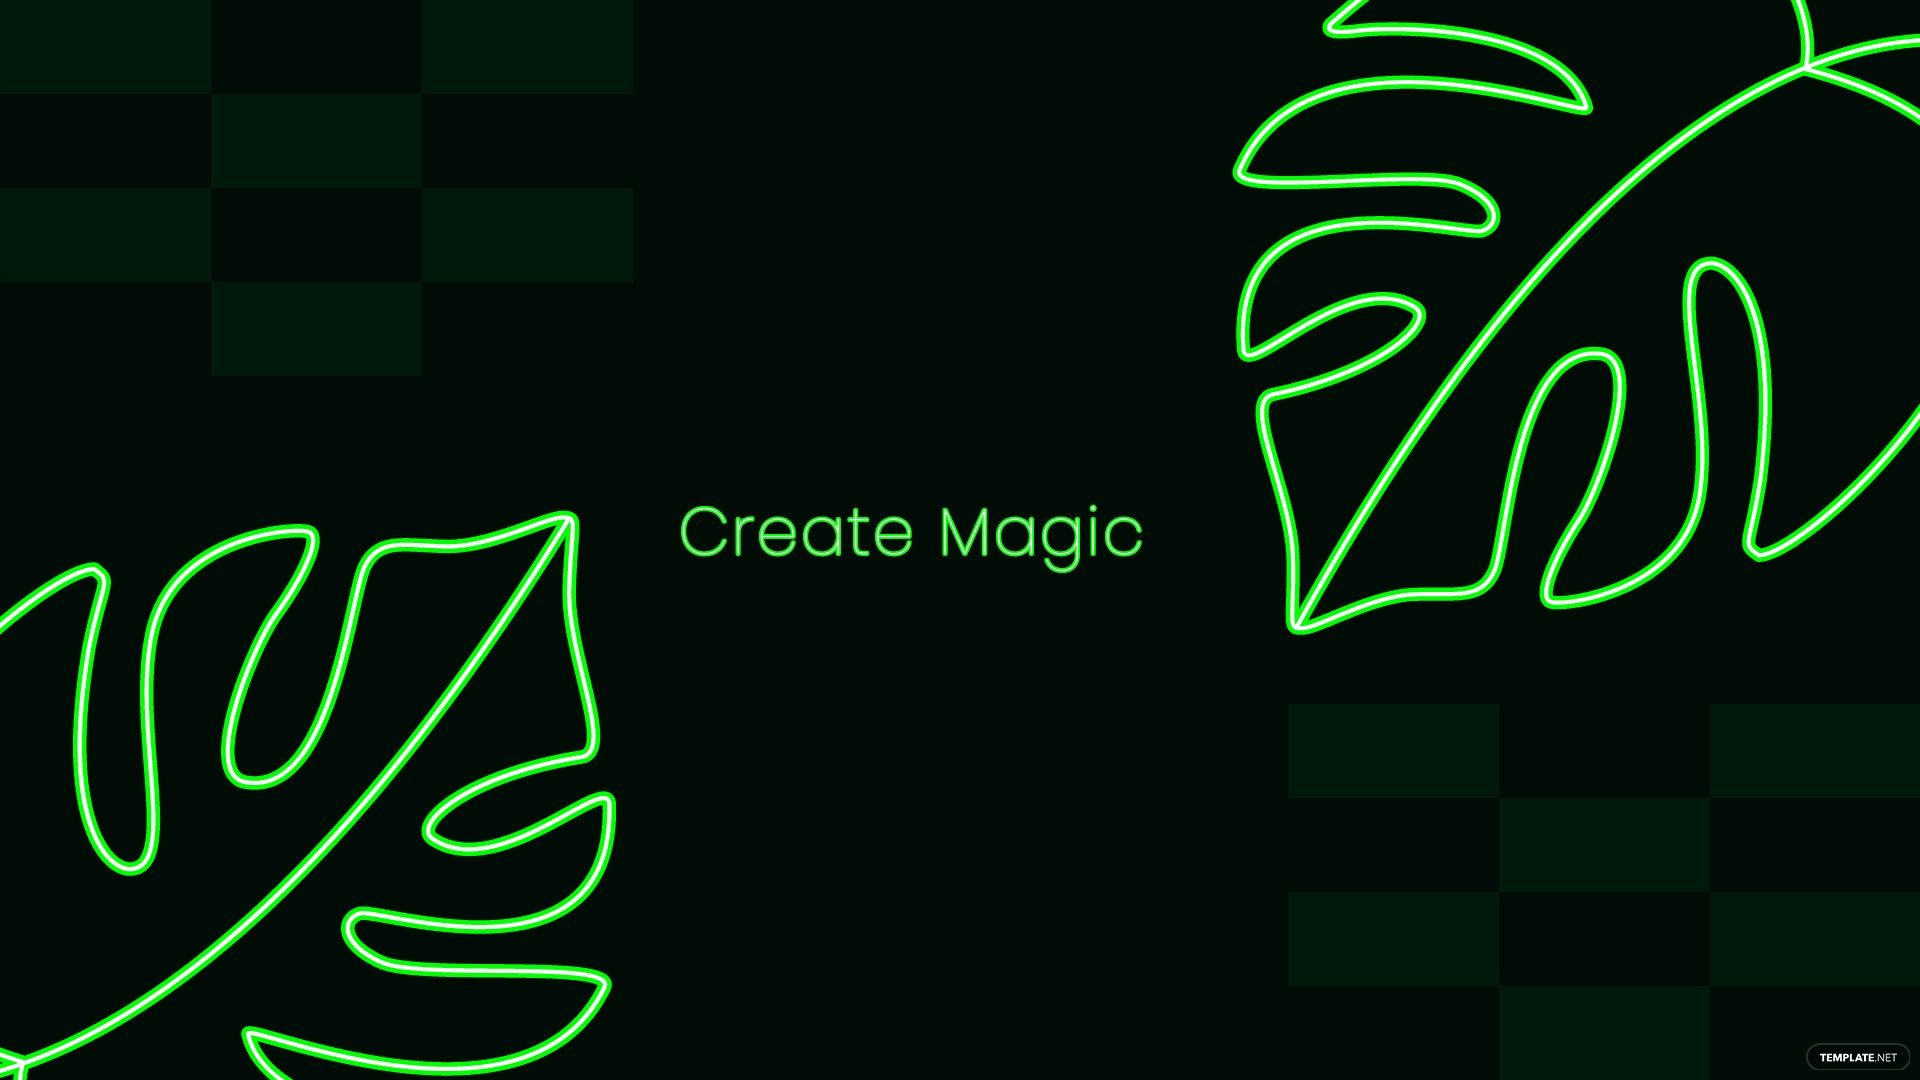 Neon Green Aesthetic Wallpaper, Illustrator, JPG, PNG, SVG